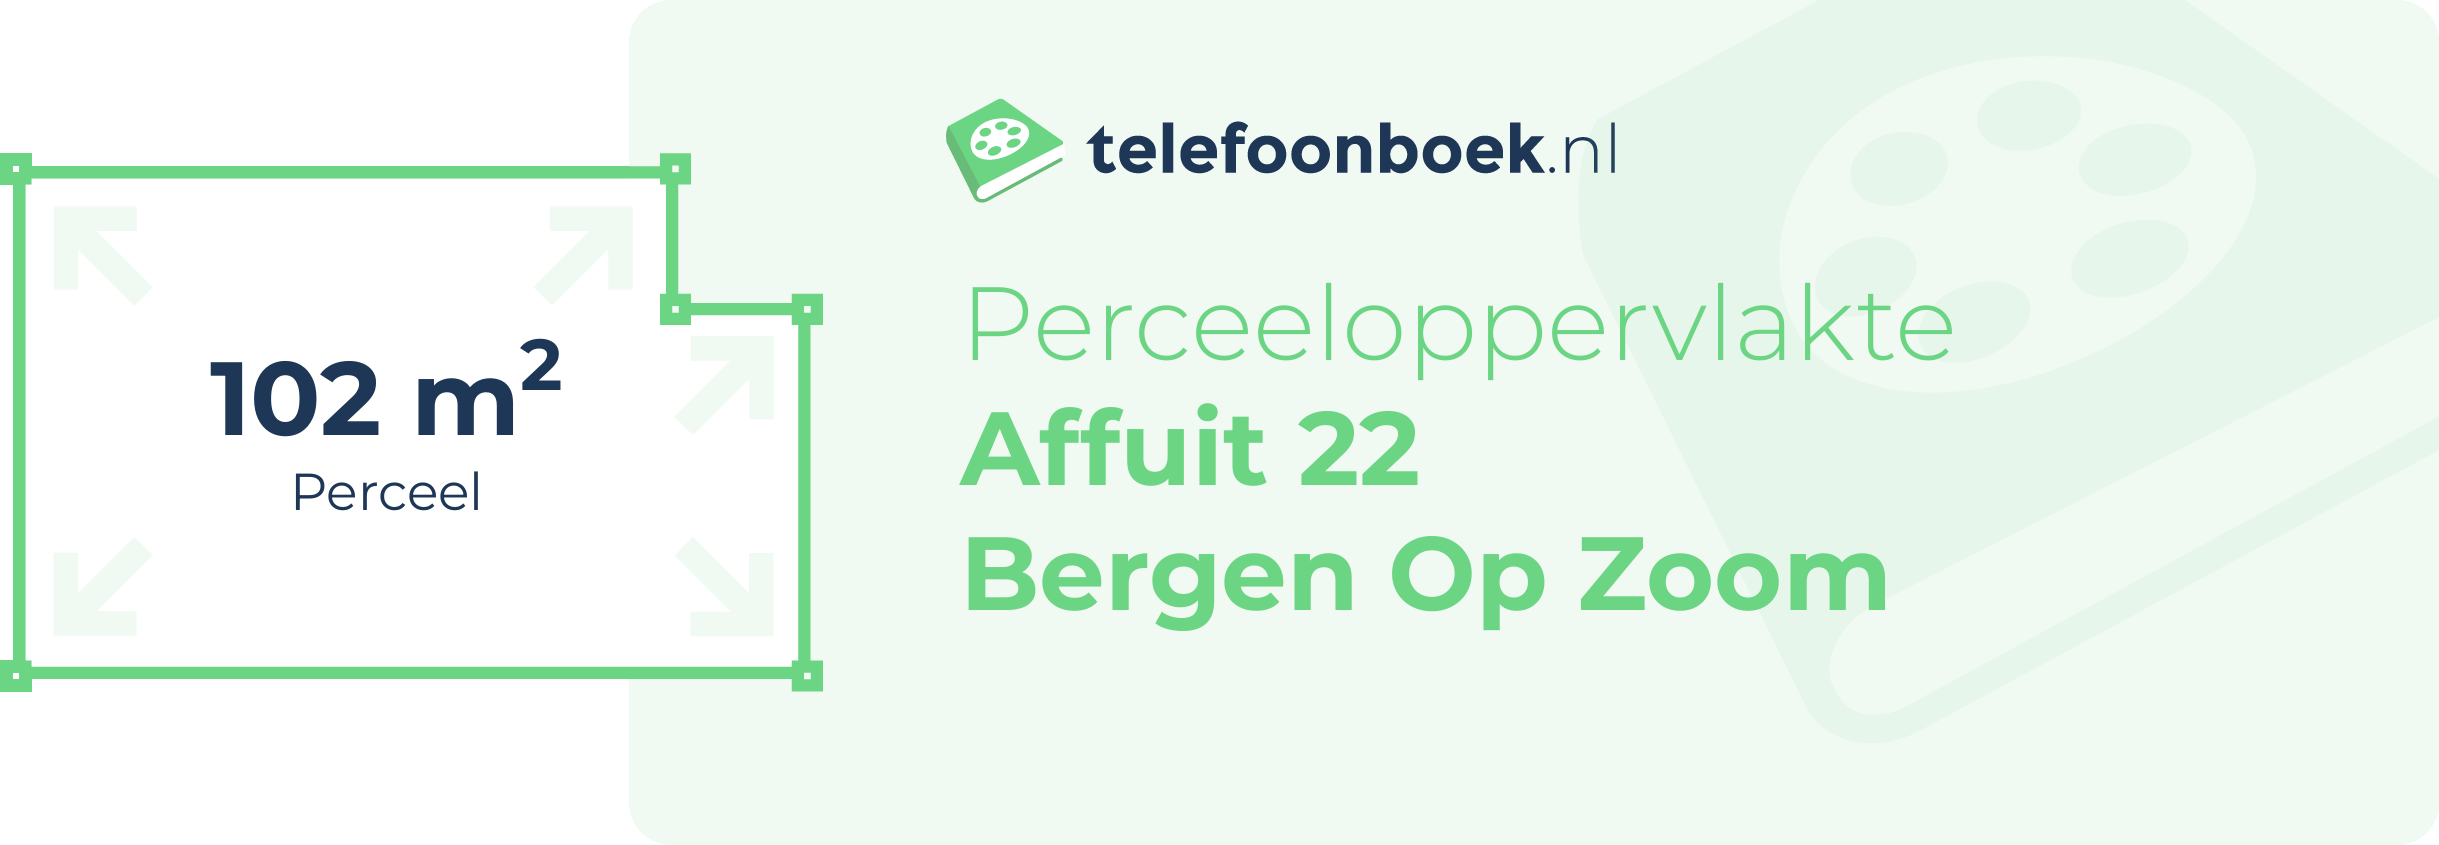 Perceeloppervlakte Affuit 22 Bergen Op Zoom